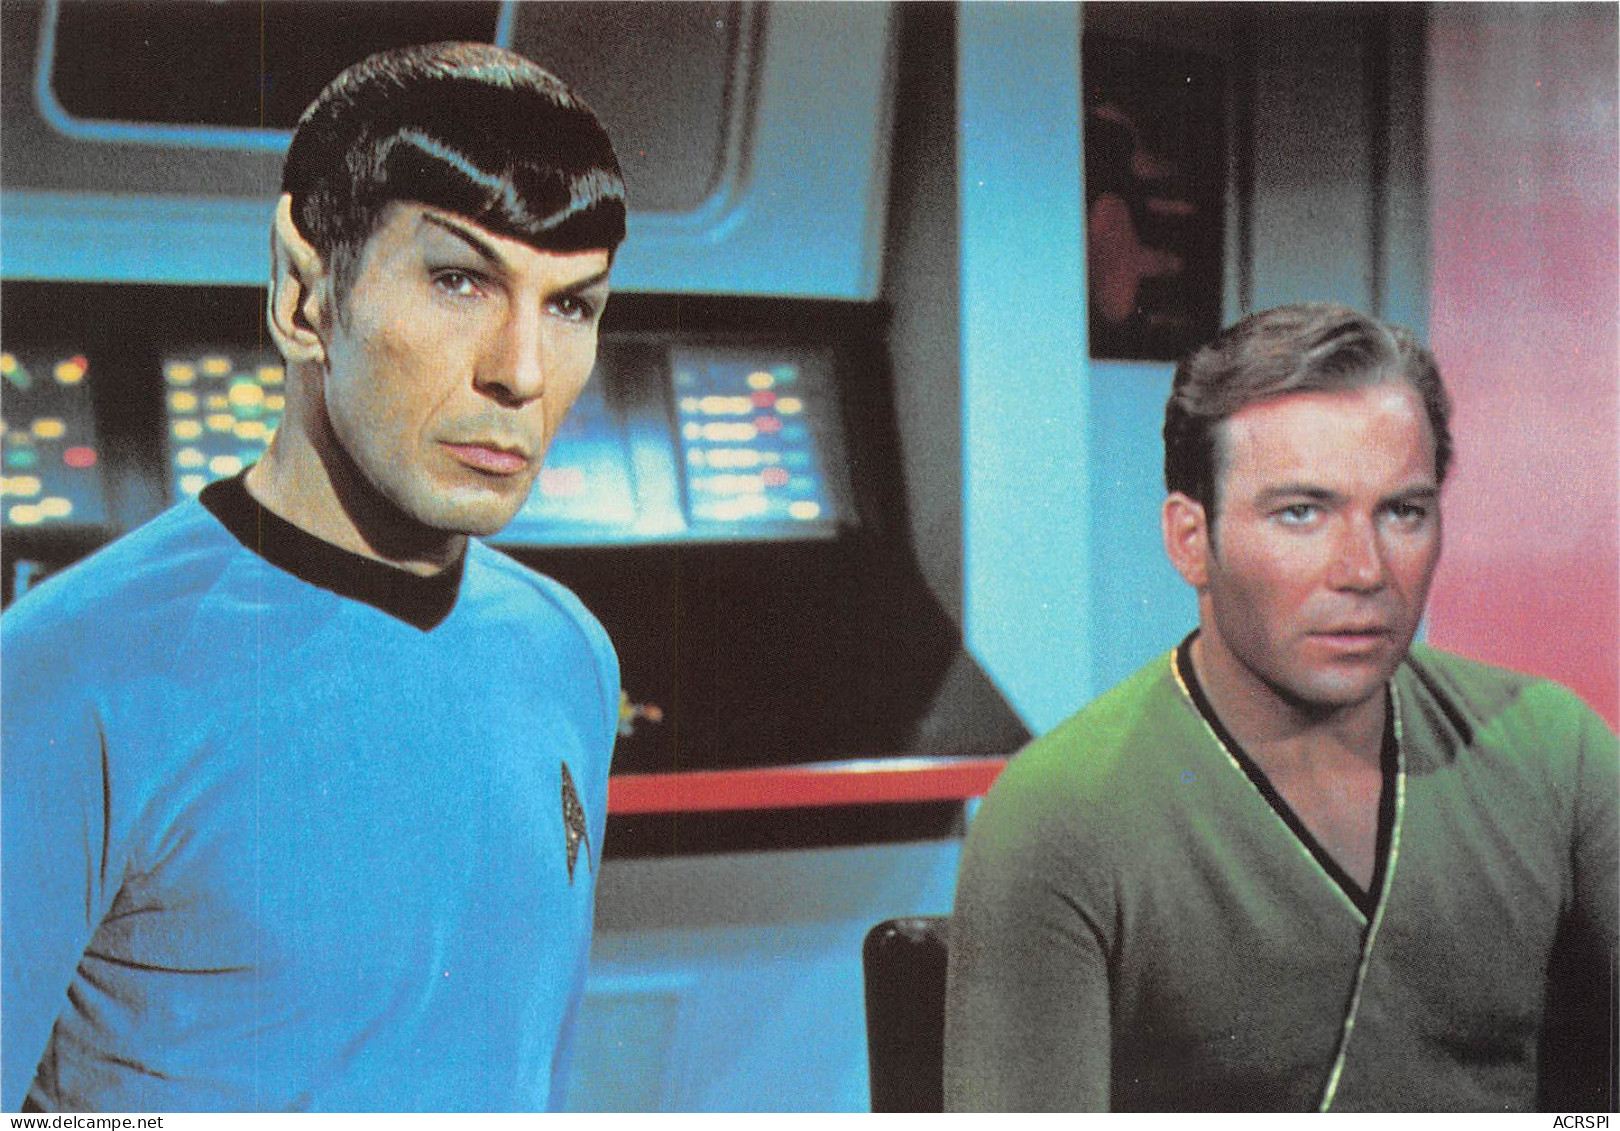  STAR TREK  KIRK  Spock  Cinema Serie   (scan Recto-verso) OO 0998 - TV Series